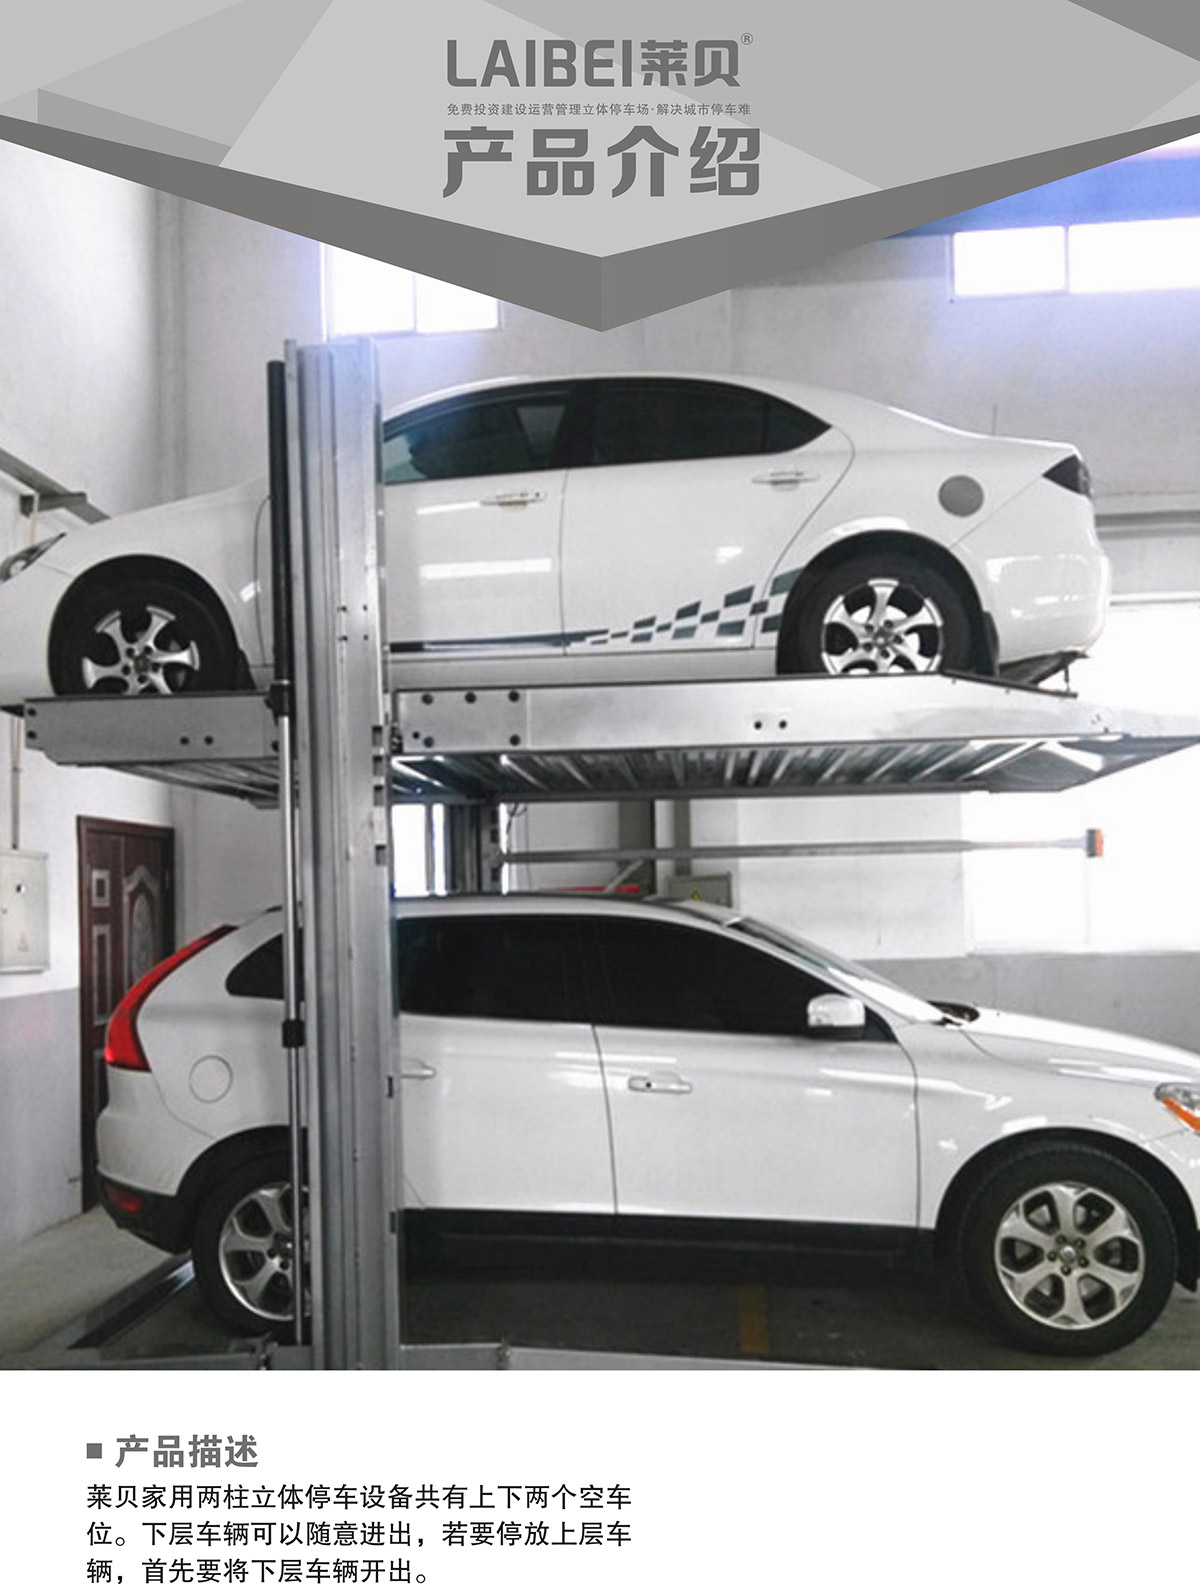 07PJS两柱简易升降机械式立体停车设备产品介绍.jpg